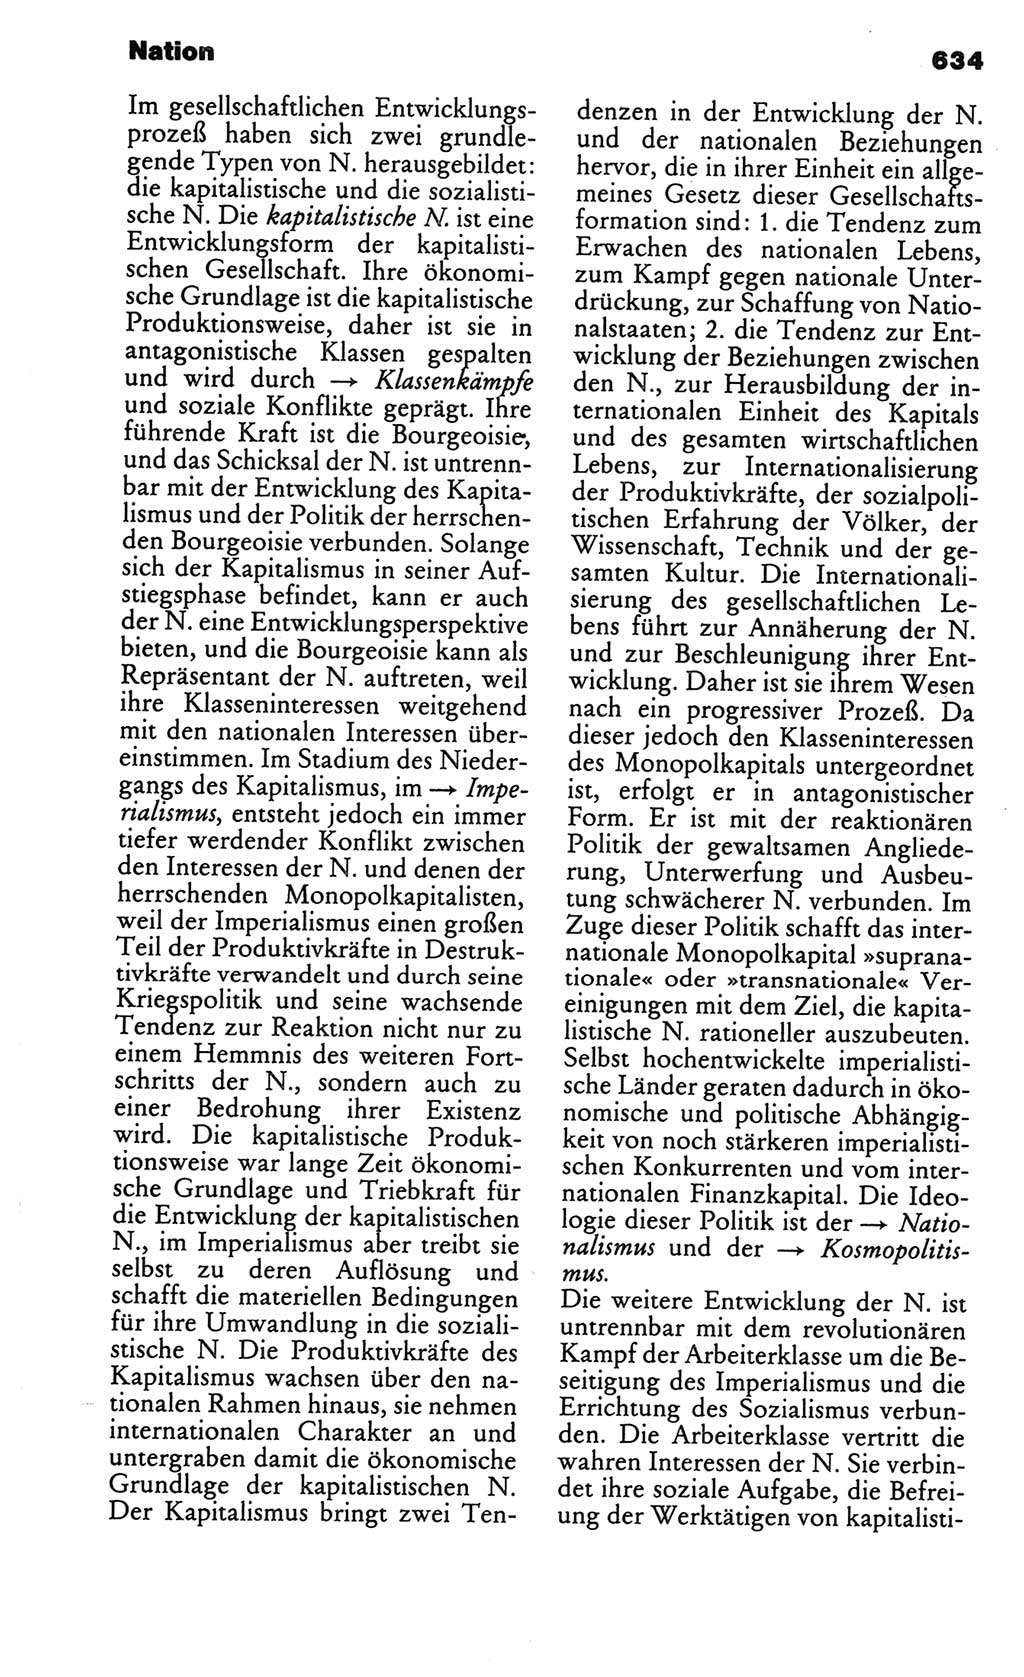 Kleines politisches Wörterbuch [Deutsche Demokratische Republik (DDR)] 1986, Seite 634 (Kl. pol. Wb. DDR 1986, S. 634)